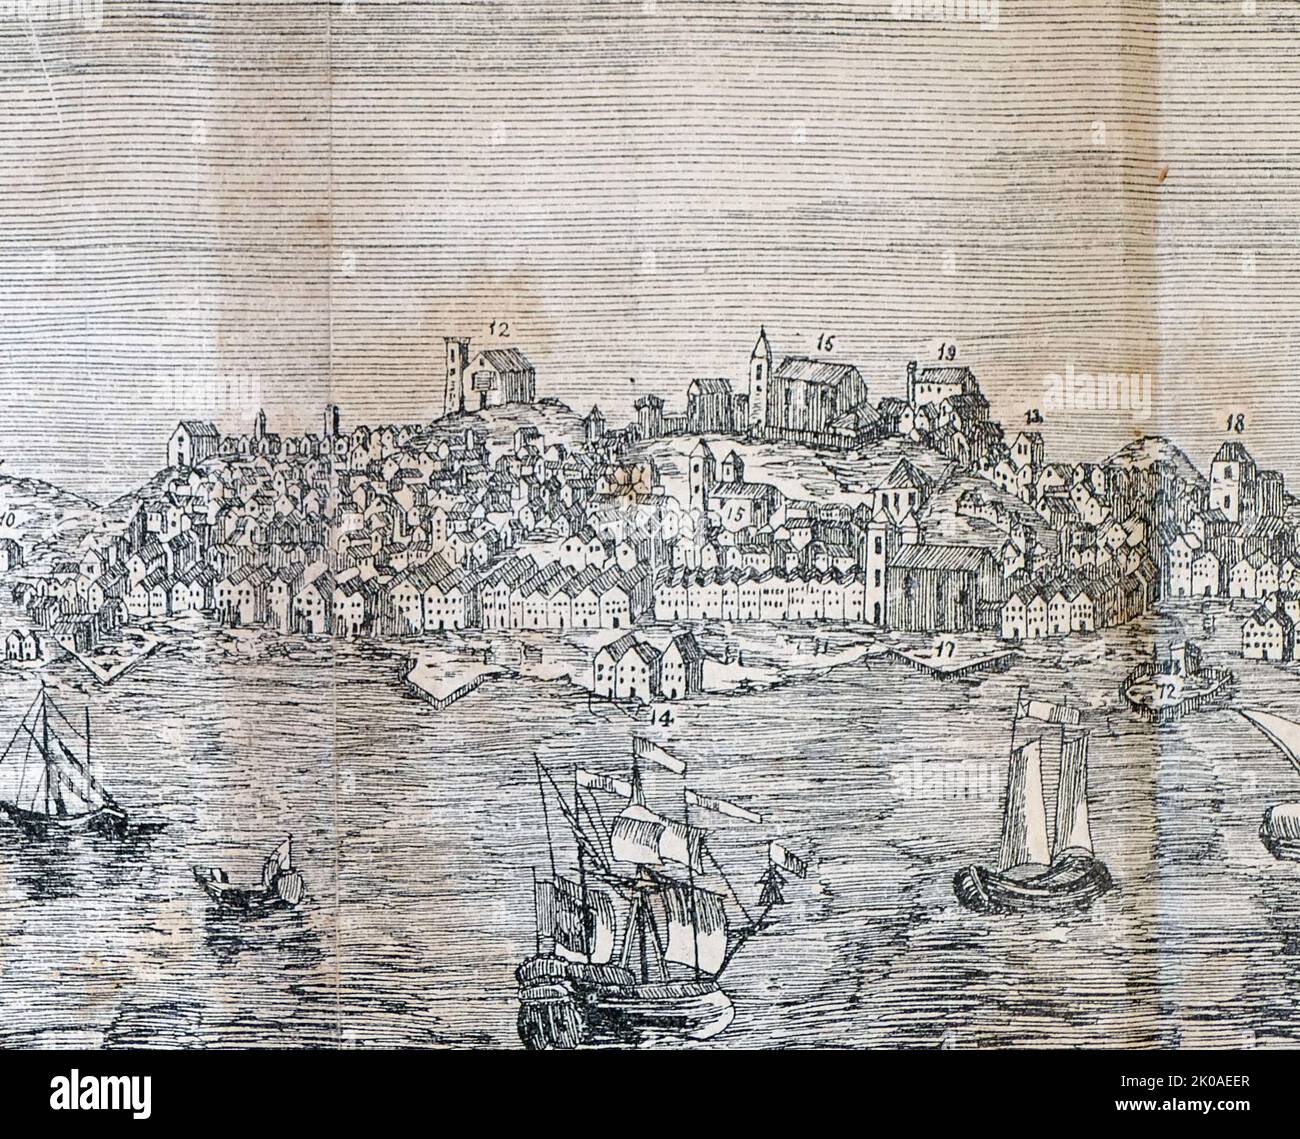 Lisbonne, Portugal, quelques mois avant le tremblement de terre de 1755. Le 1 novembre 1755, la ville a été détruite par un autre tremblement de terre dévastateur, qui a tué environ 30 000 à 40 000 habitants de Lisbonne d'une population estimée entre 200 000 et 275 000, et détruit 85 pour cent des structures de la ville Banque D'Images